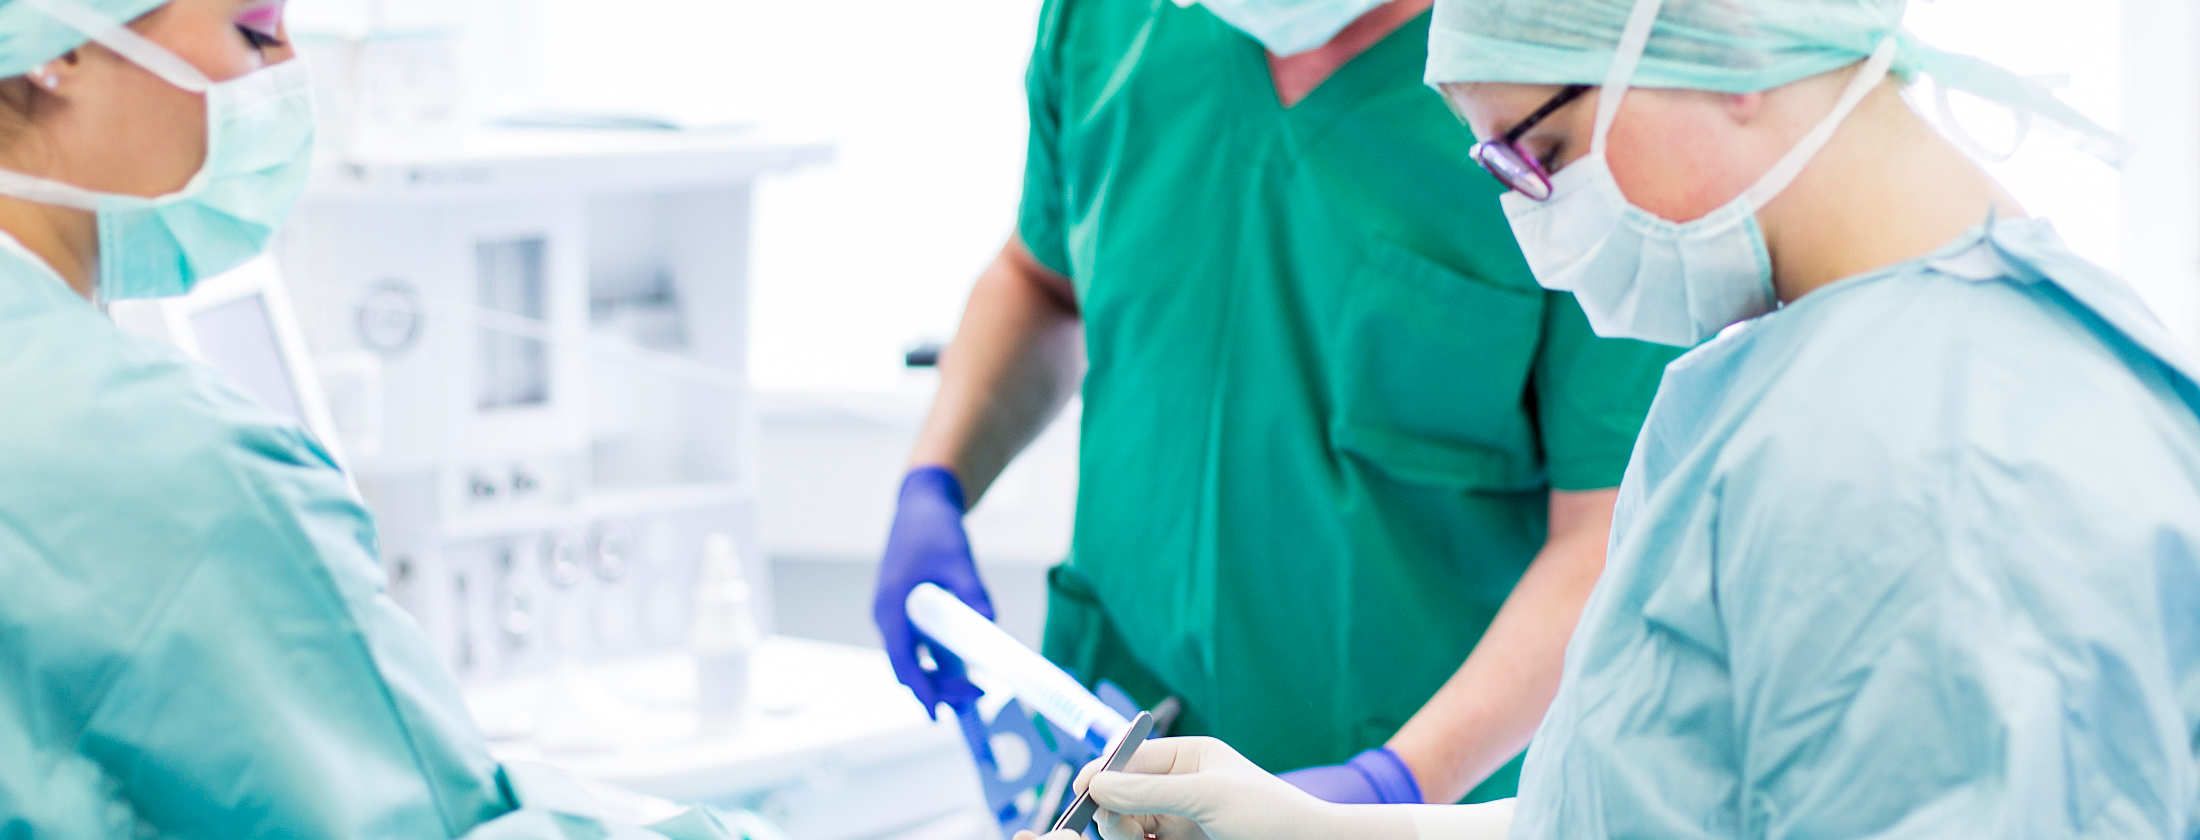 Schönheitschirurgen bei einer Schönheitsoperation in Frankfurt am Main. Operationsschwestern und der Plastische Chirurg sind in OP-Kittel gekleidet. Ein Anästhesiologe hält die Patienten im Tiefschlaf, während der Chirurg mit OP-Instrumenten hantiert.